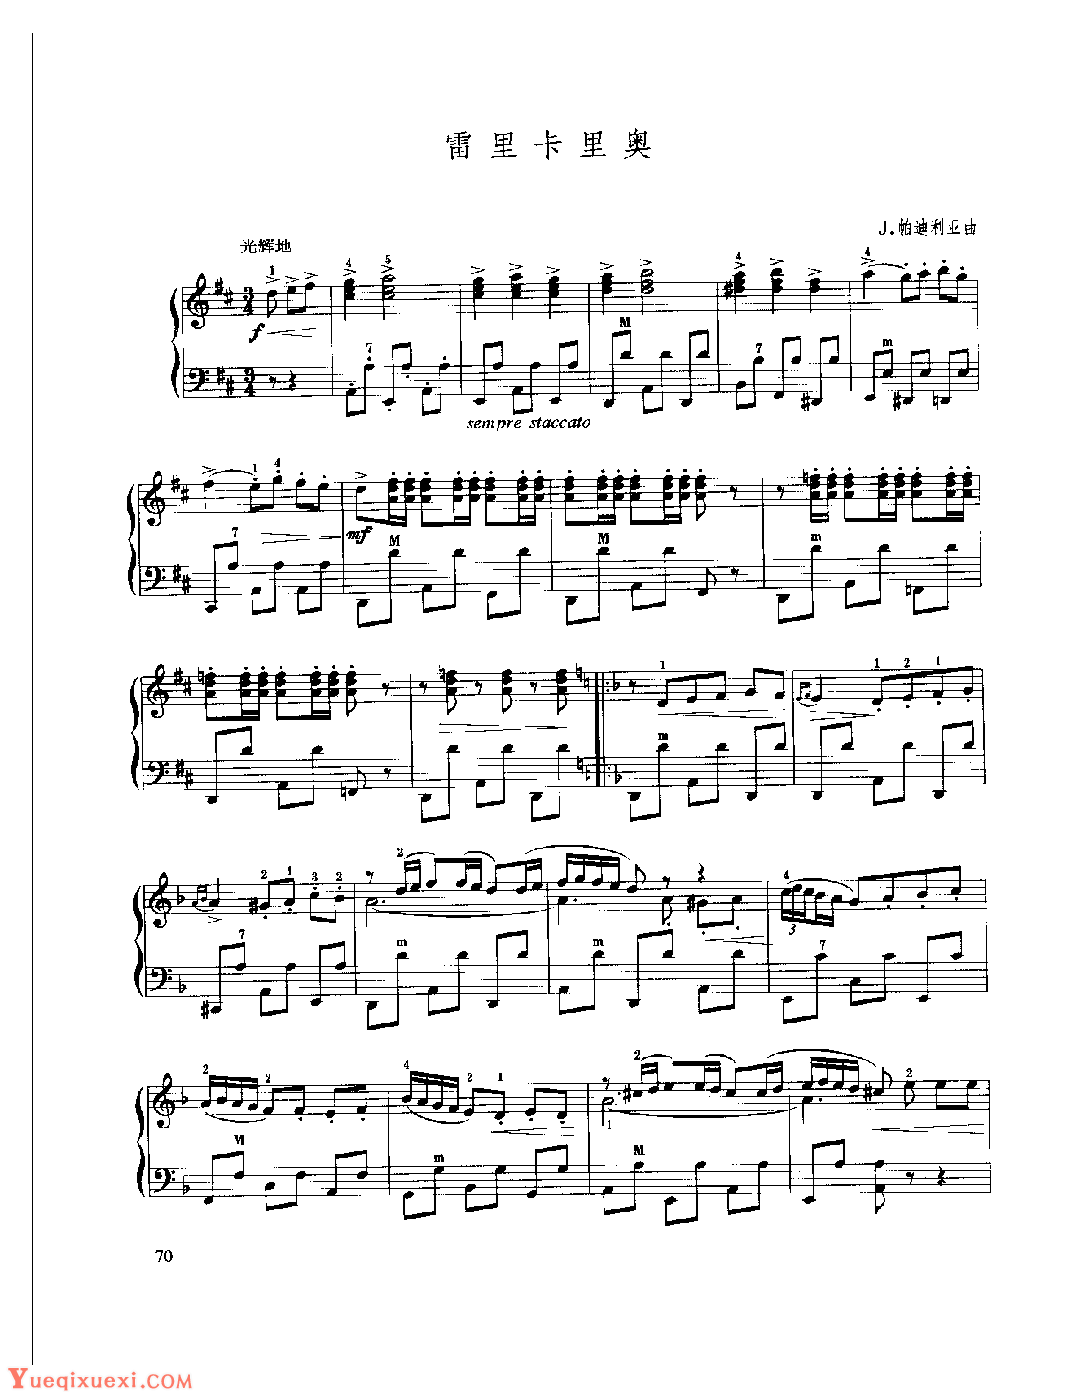 现代手风琴流行乐曲《雷里卡里奥》J.帕迪利亚曲